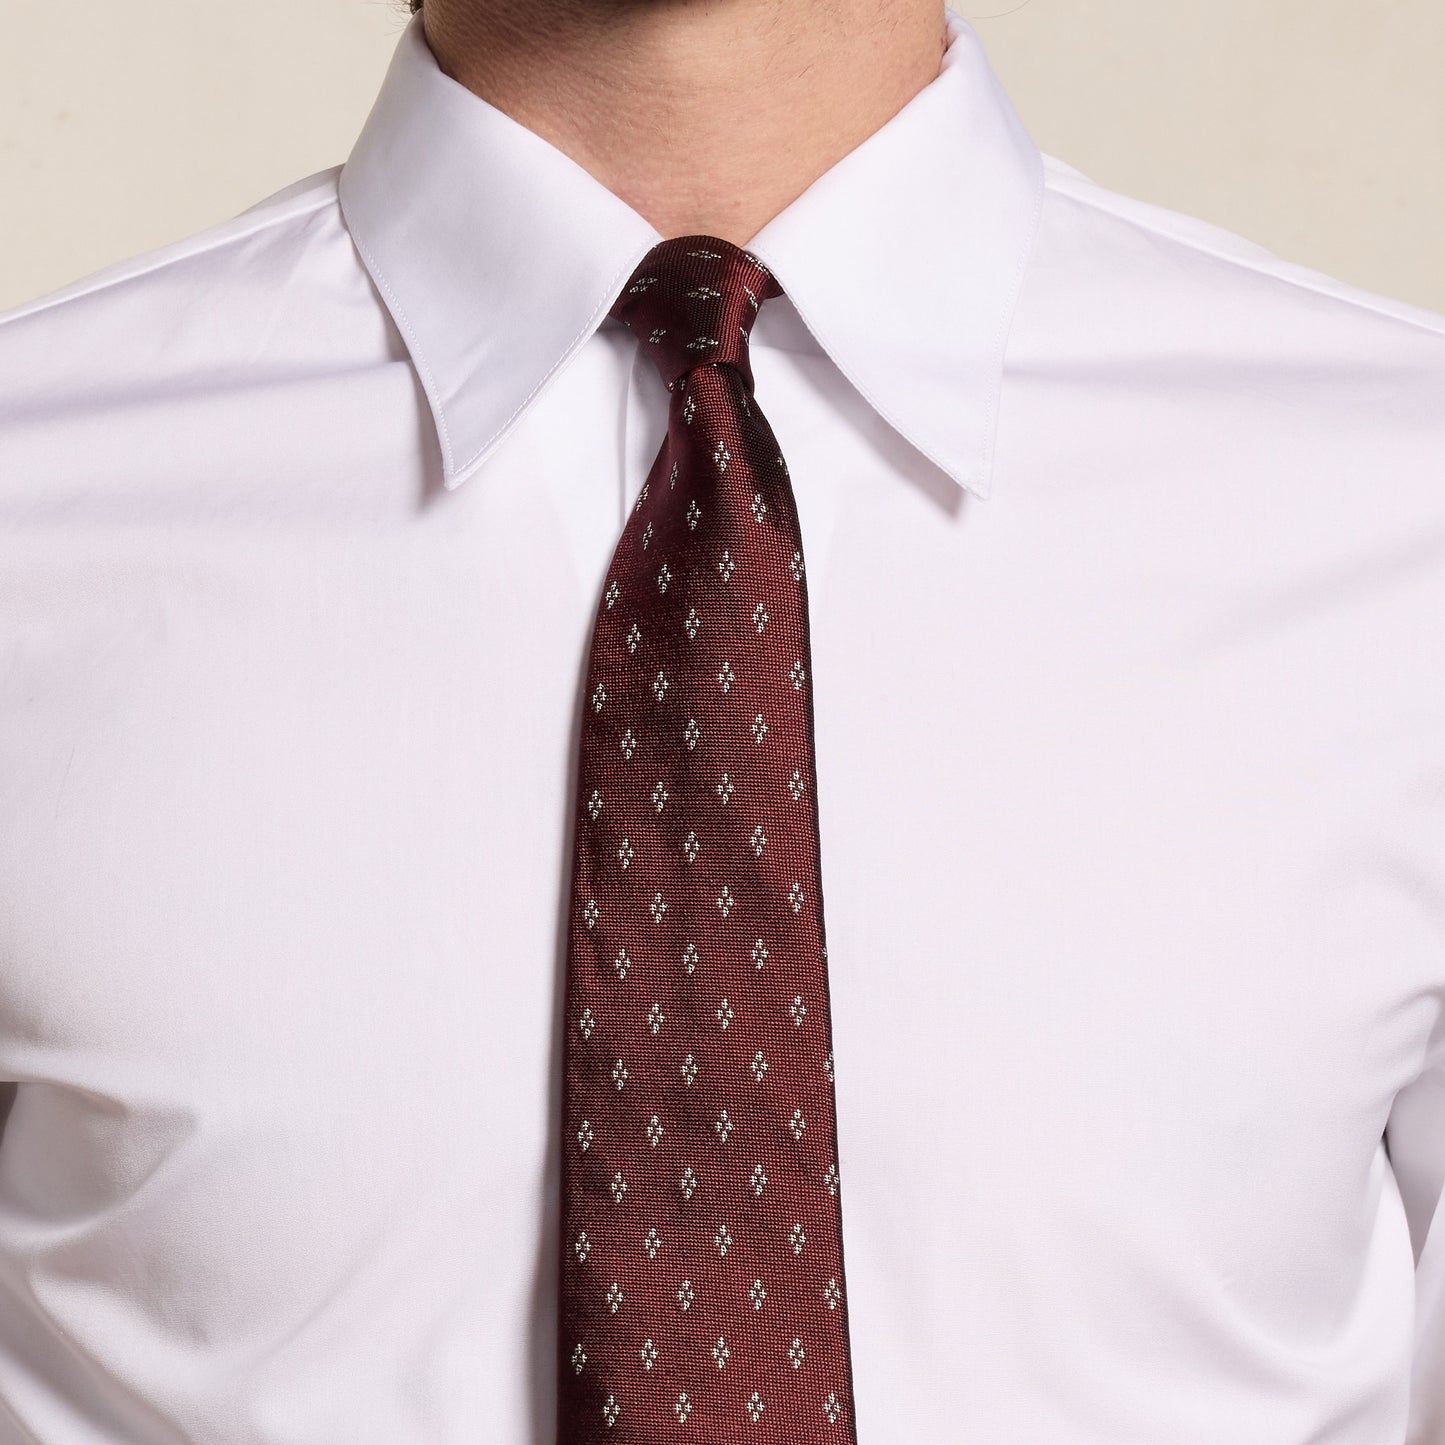 Cravate bordeaux à motifs